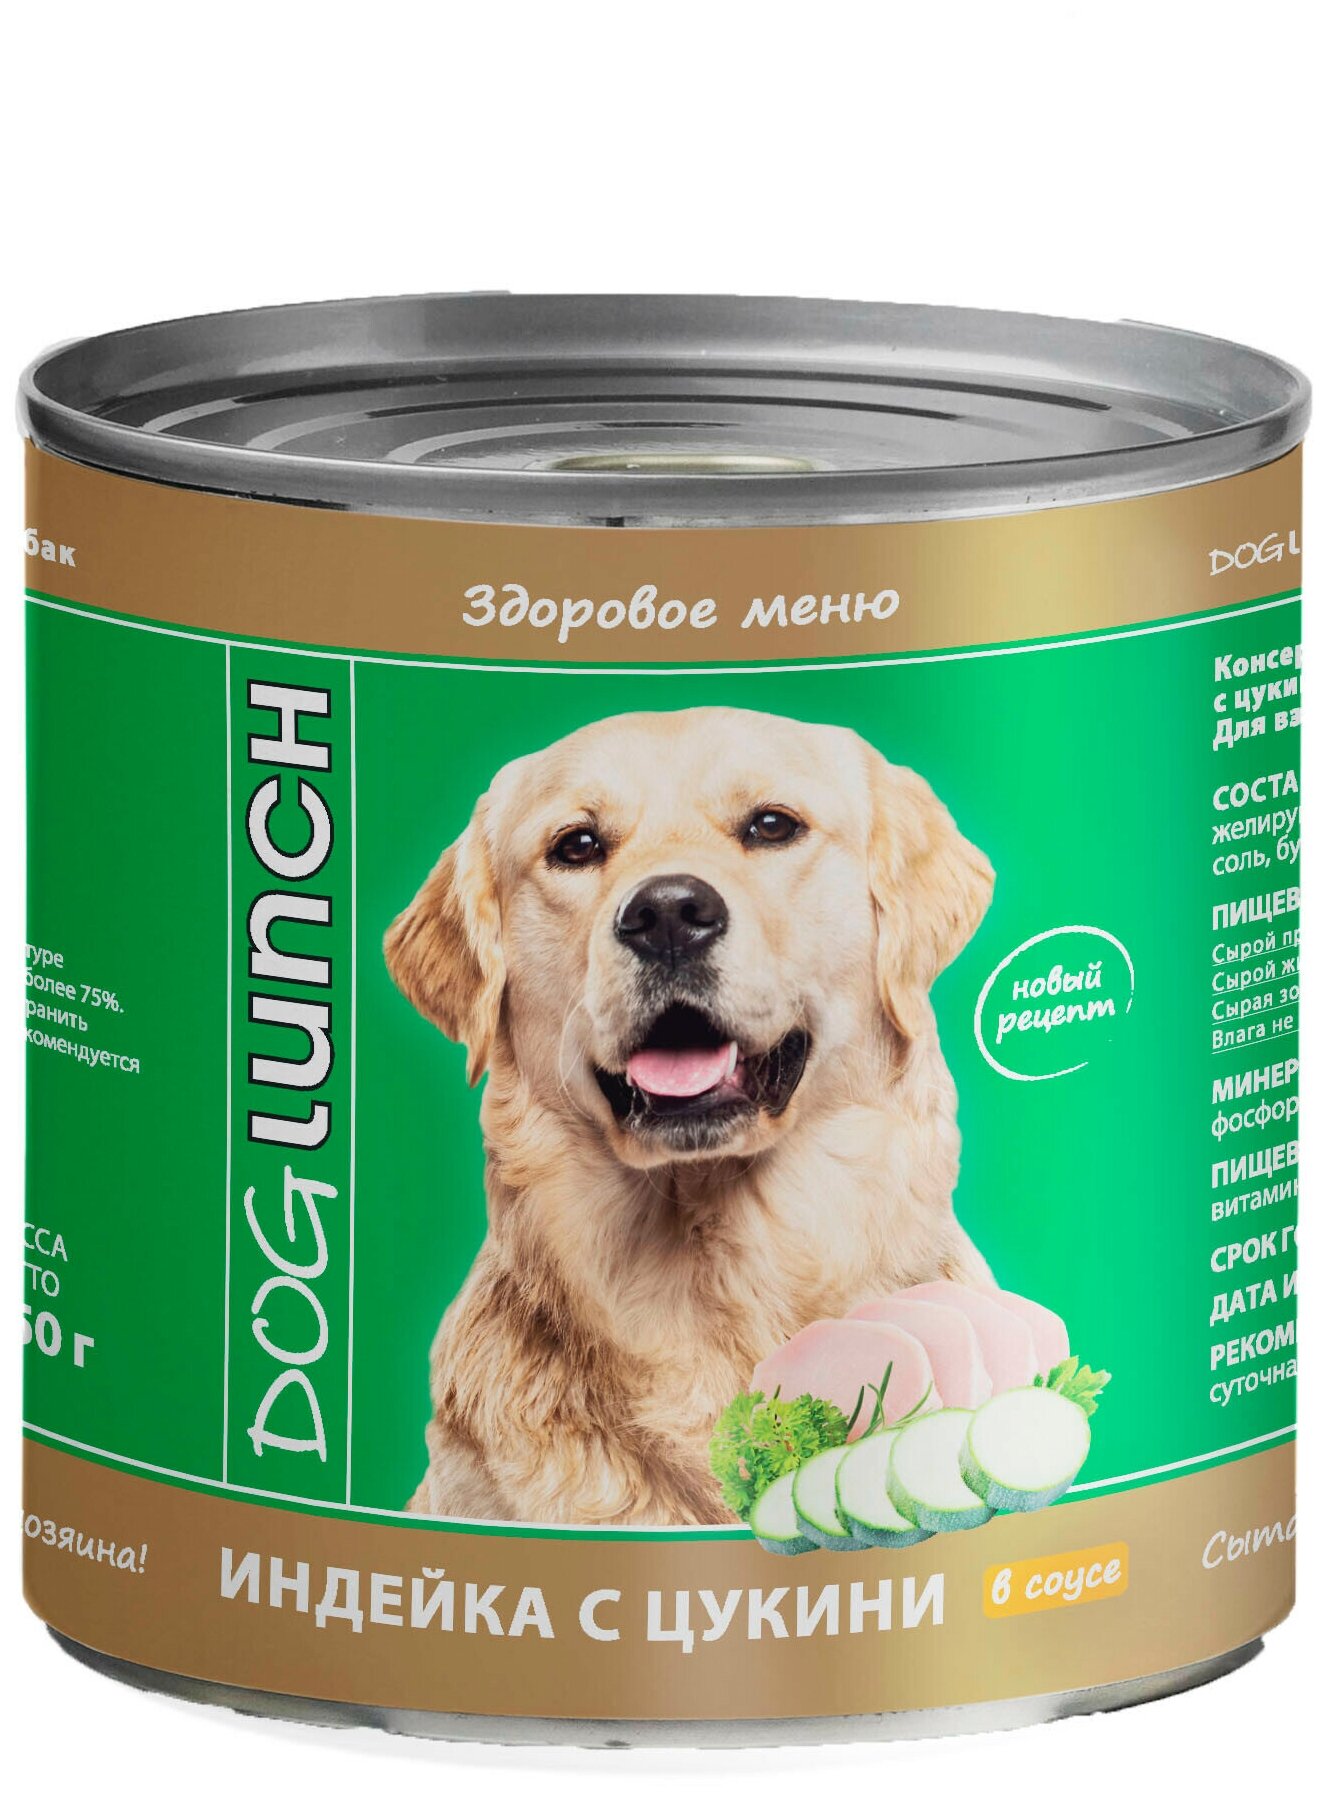 Консервы для собак DogLunch Индейка с цукини в соусе для собак х 9шт